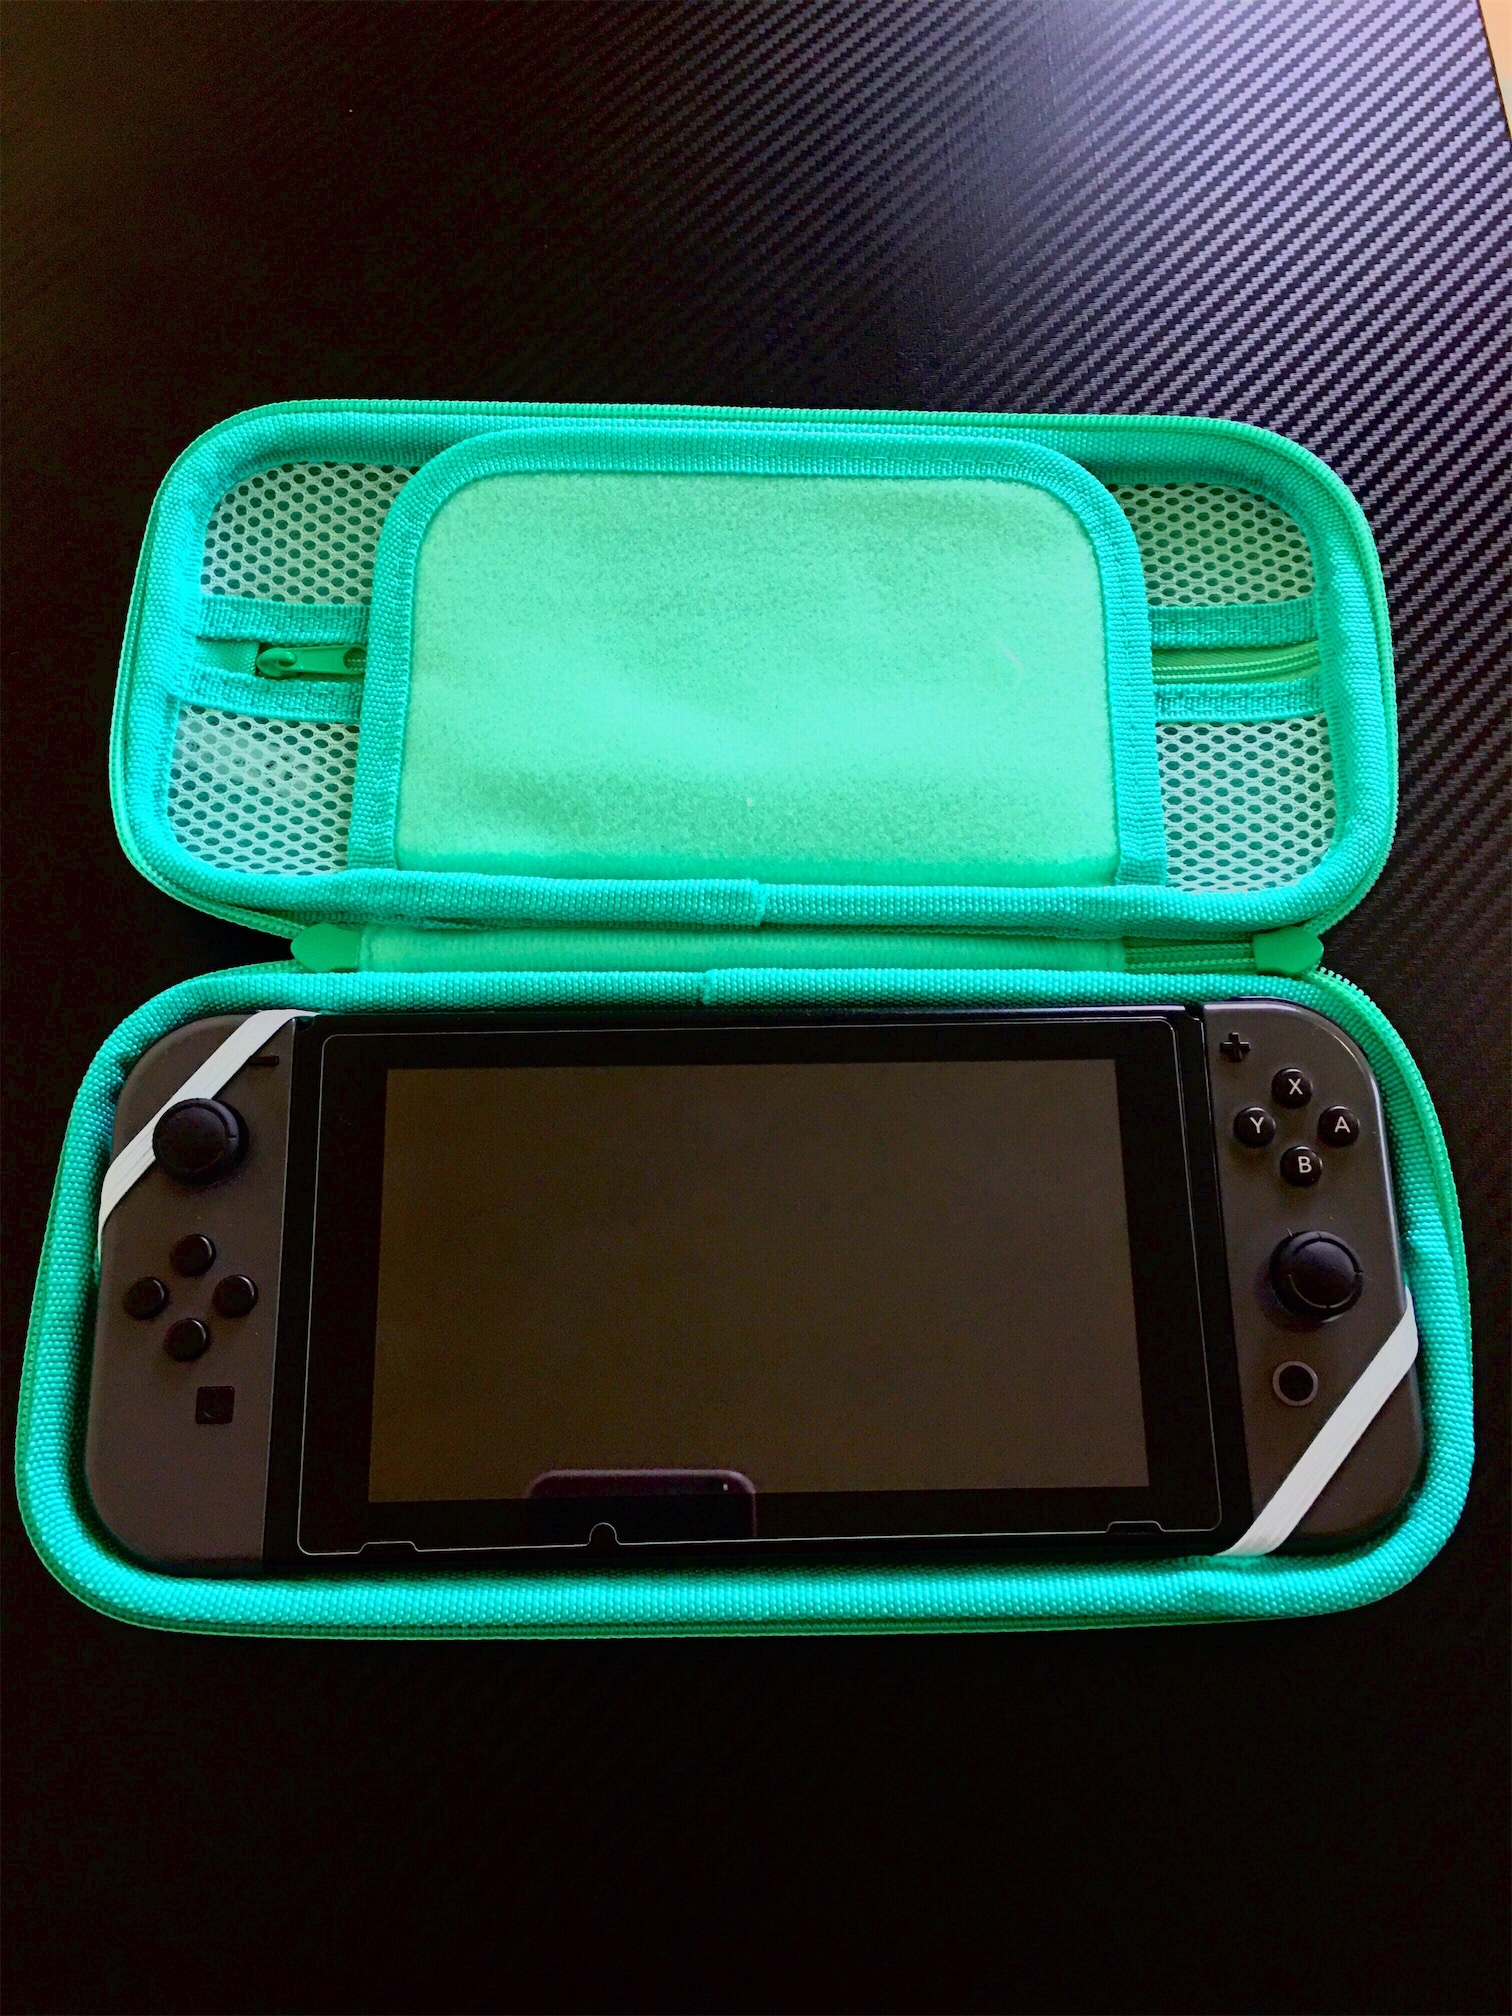 accesorios para electronica - Bulto Protector para Nintendo Switch 